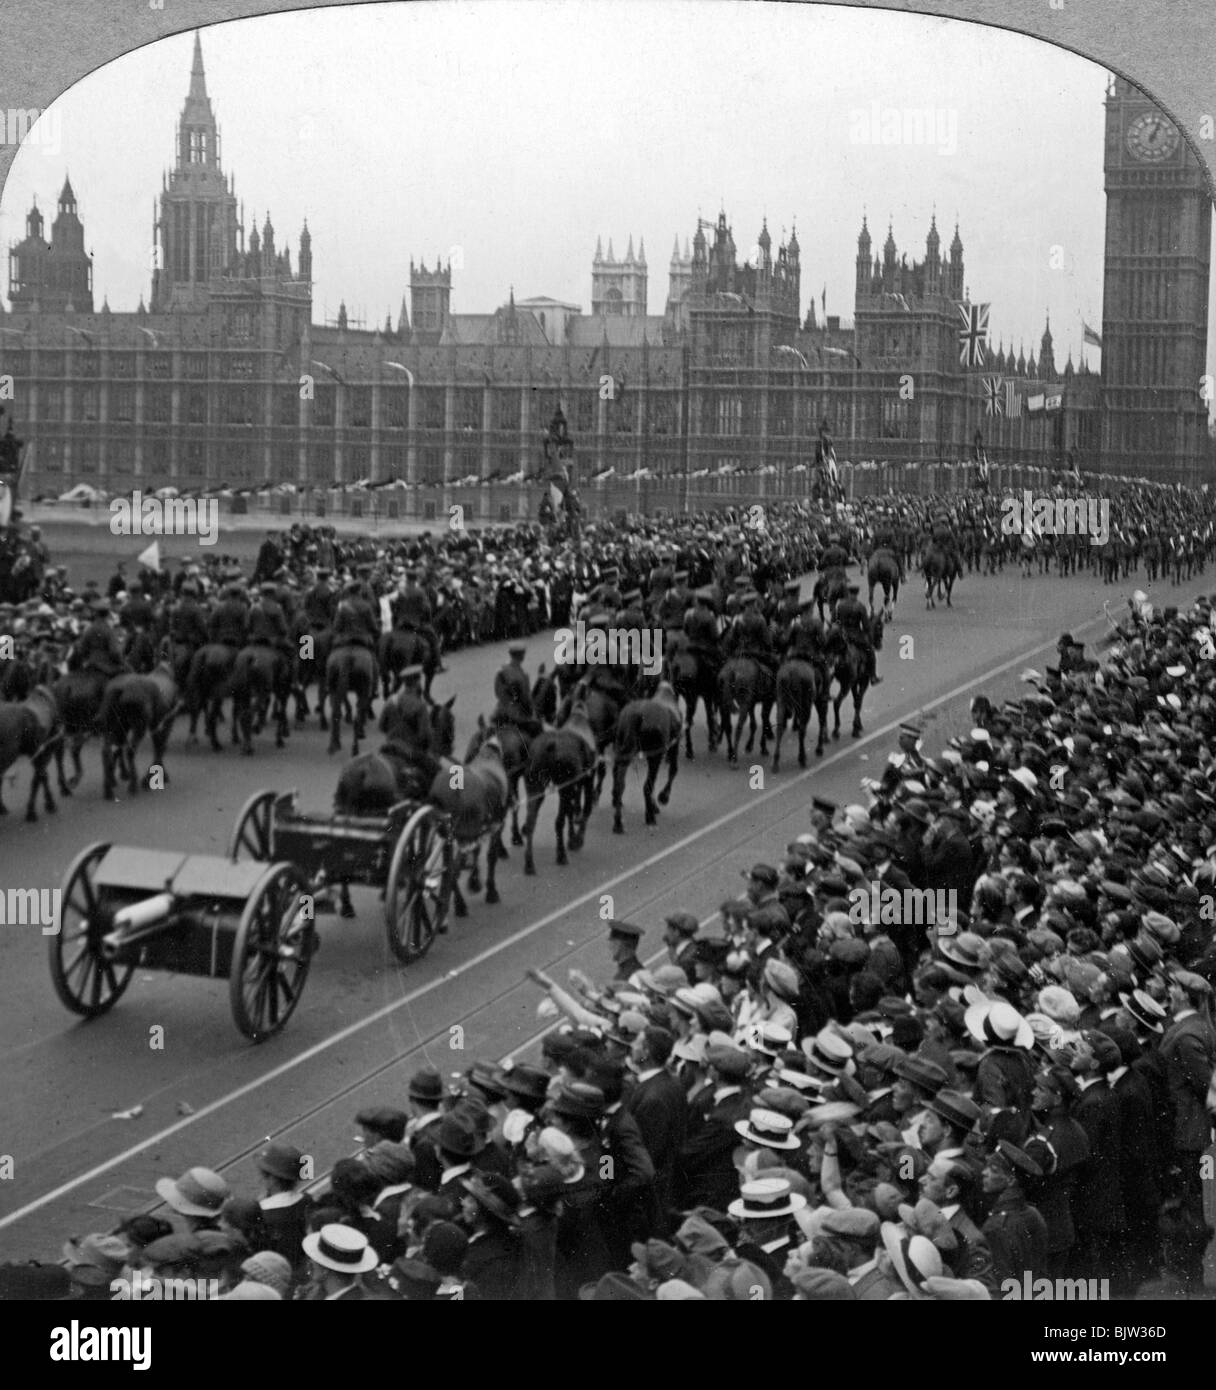 Artillerie in der große Marsch der Truppen des Imperiums, die Westminster Bridge, London, 1919 (?). Artist: Realistische Reisen Verlage Stockfoto